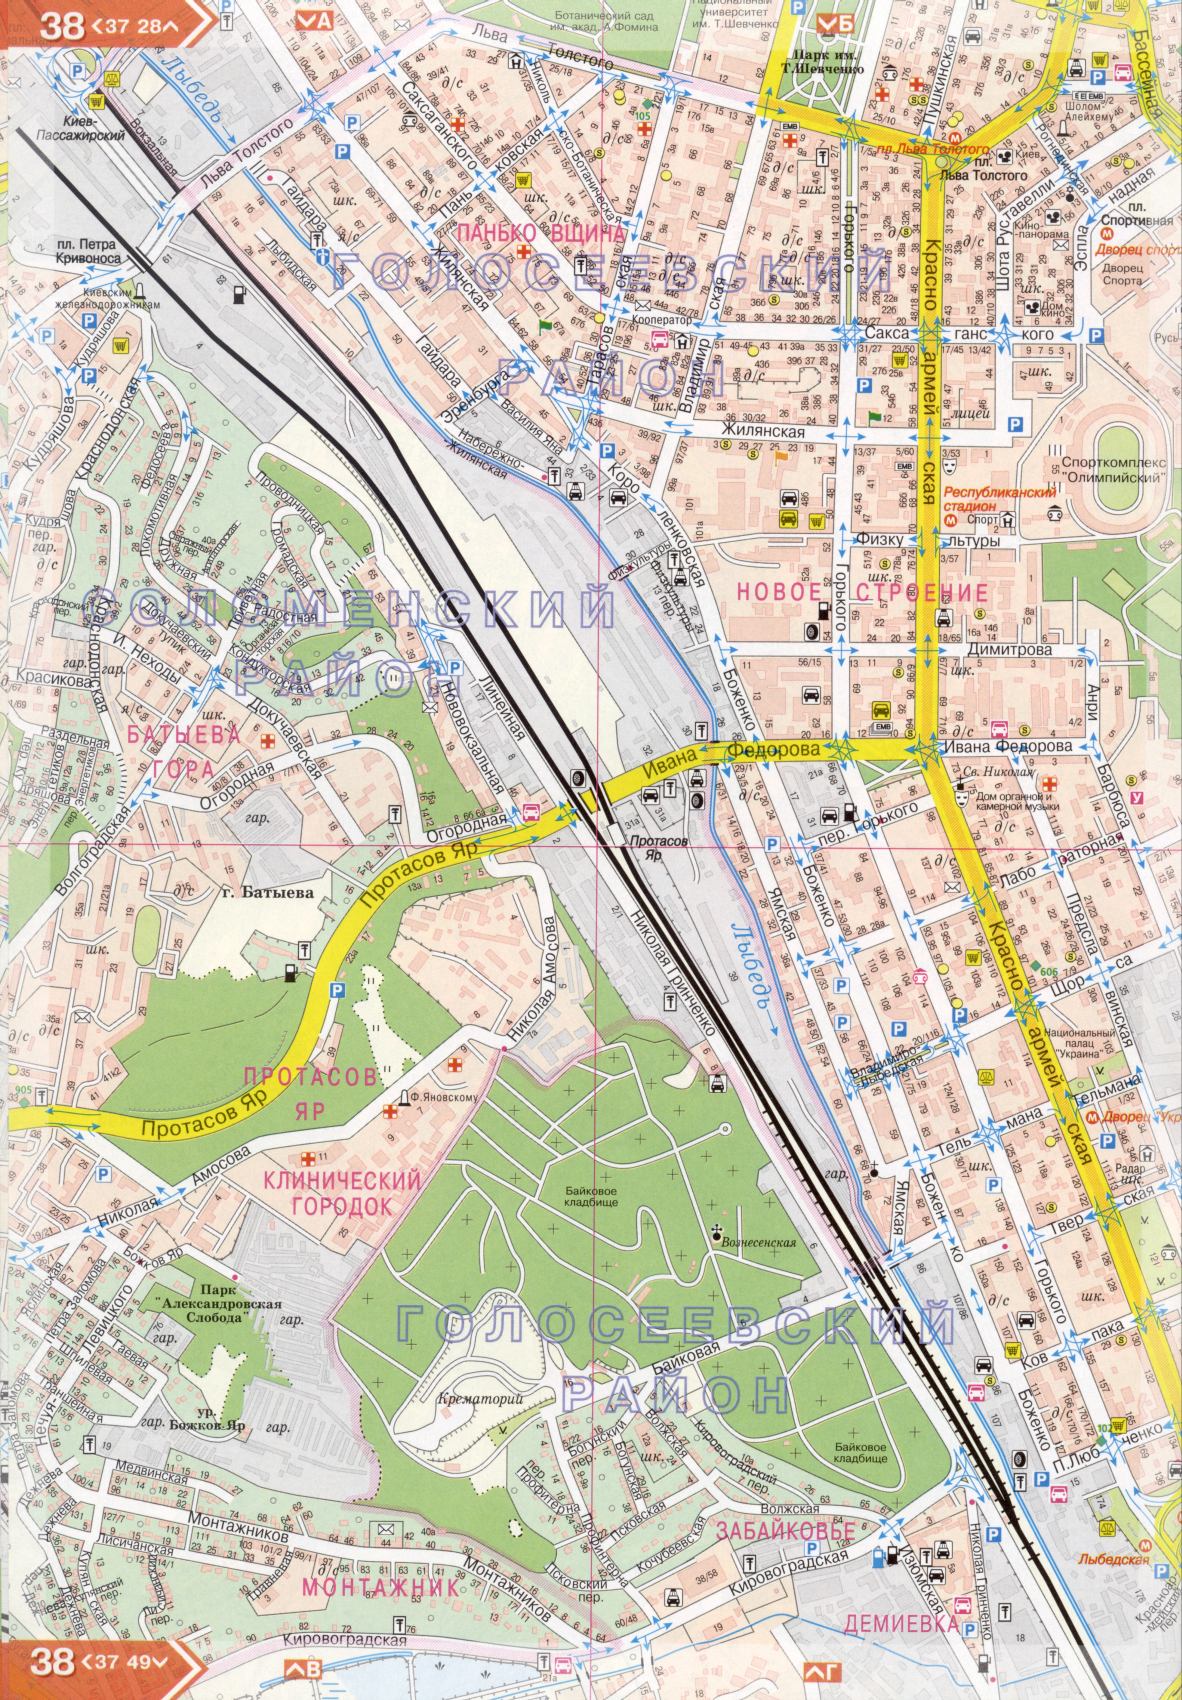 Kiev carte détails 1cm = 150m pour 45 feuilles. Carte de Kiev de l'atlas des routes. Télécharger une carte détaillée, E3